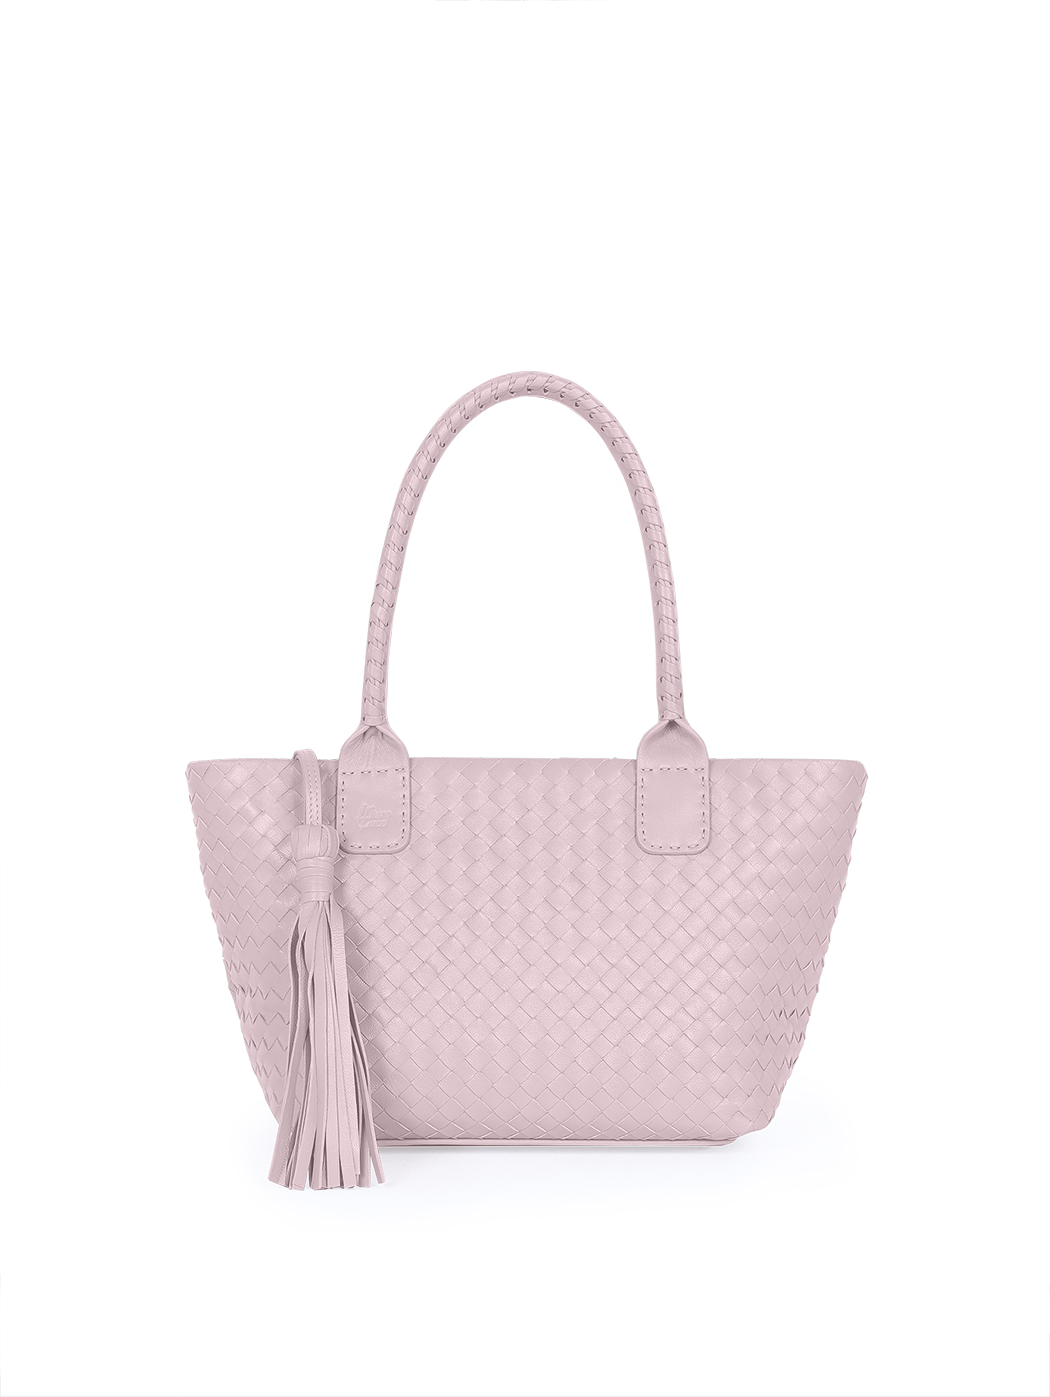 Кожаная плетеная сумка – тоут коллекции Intrecci розового цвета